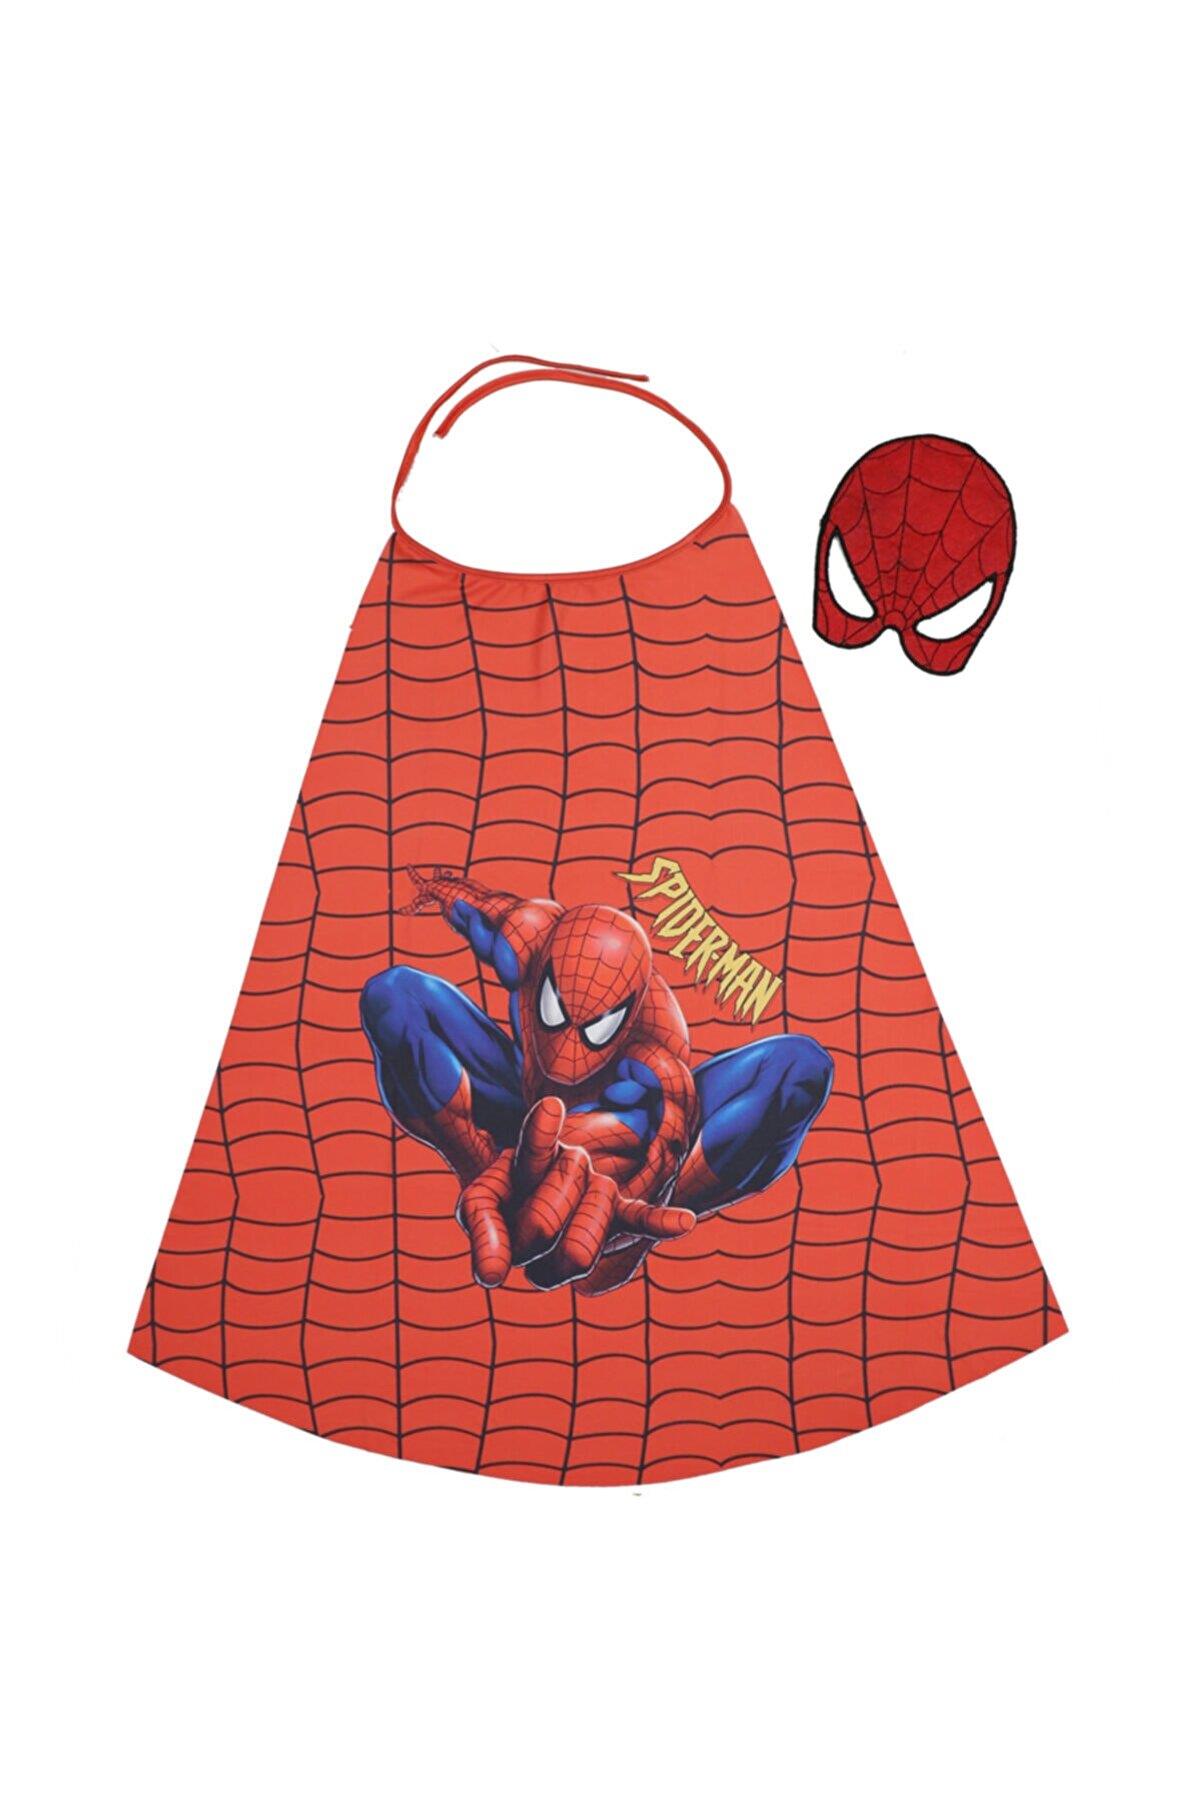 Spiderman Marvel Erkek Çocuk Keçe Maske + Pelerin